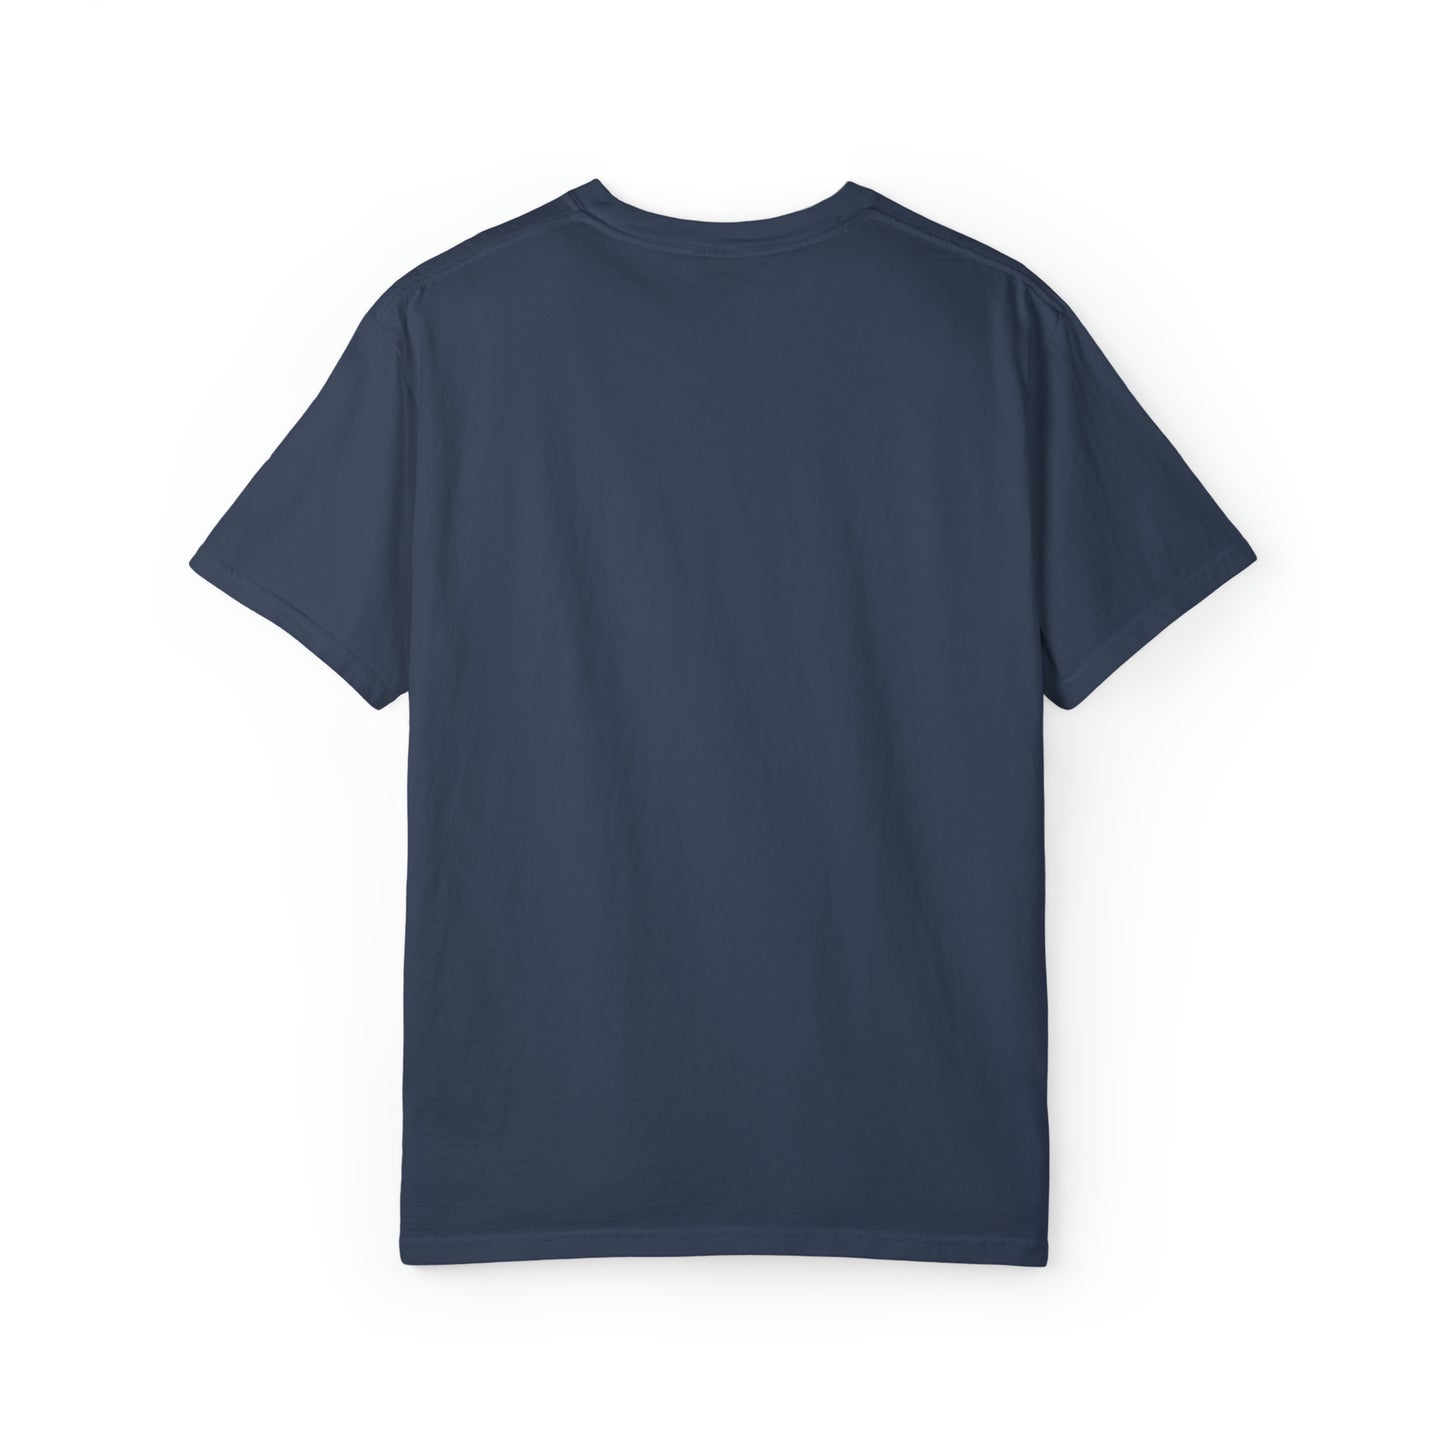 要素をマスターする: リールエキスパートの多彩なタックル T シャツ